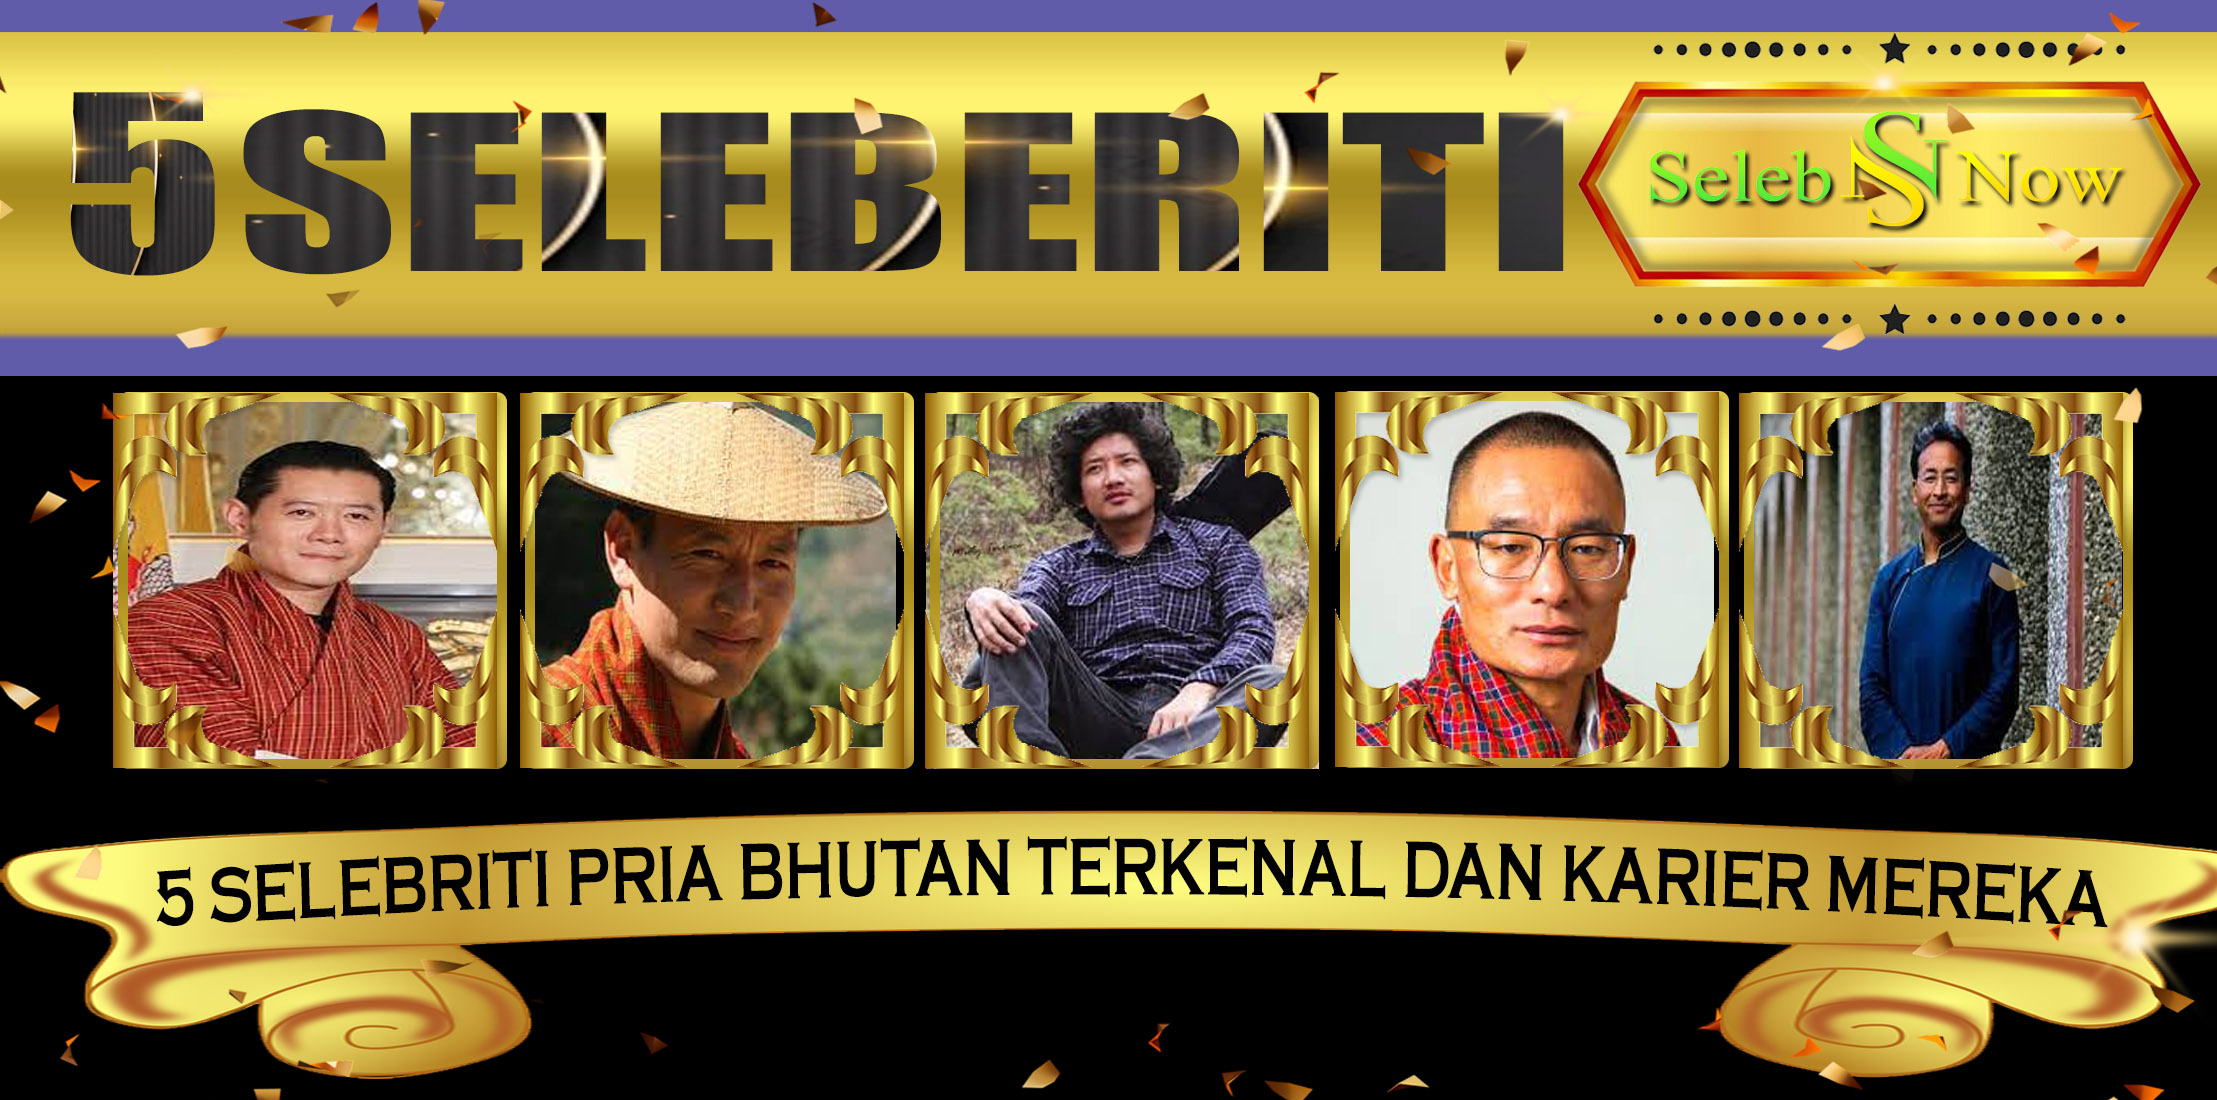 5 Selebriti Pria Bhutan